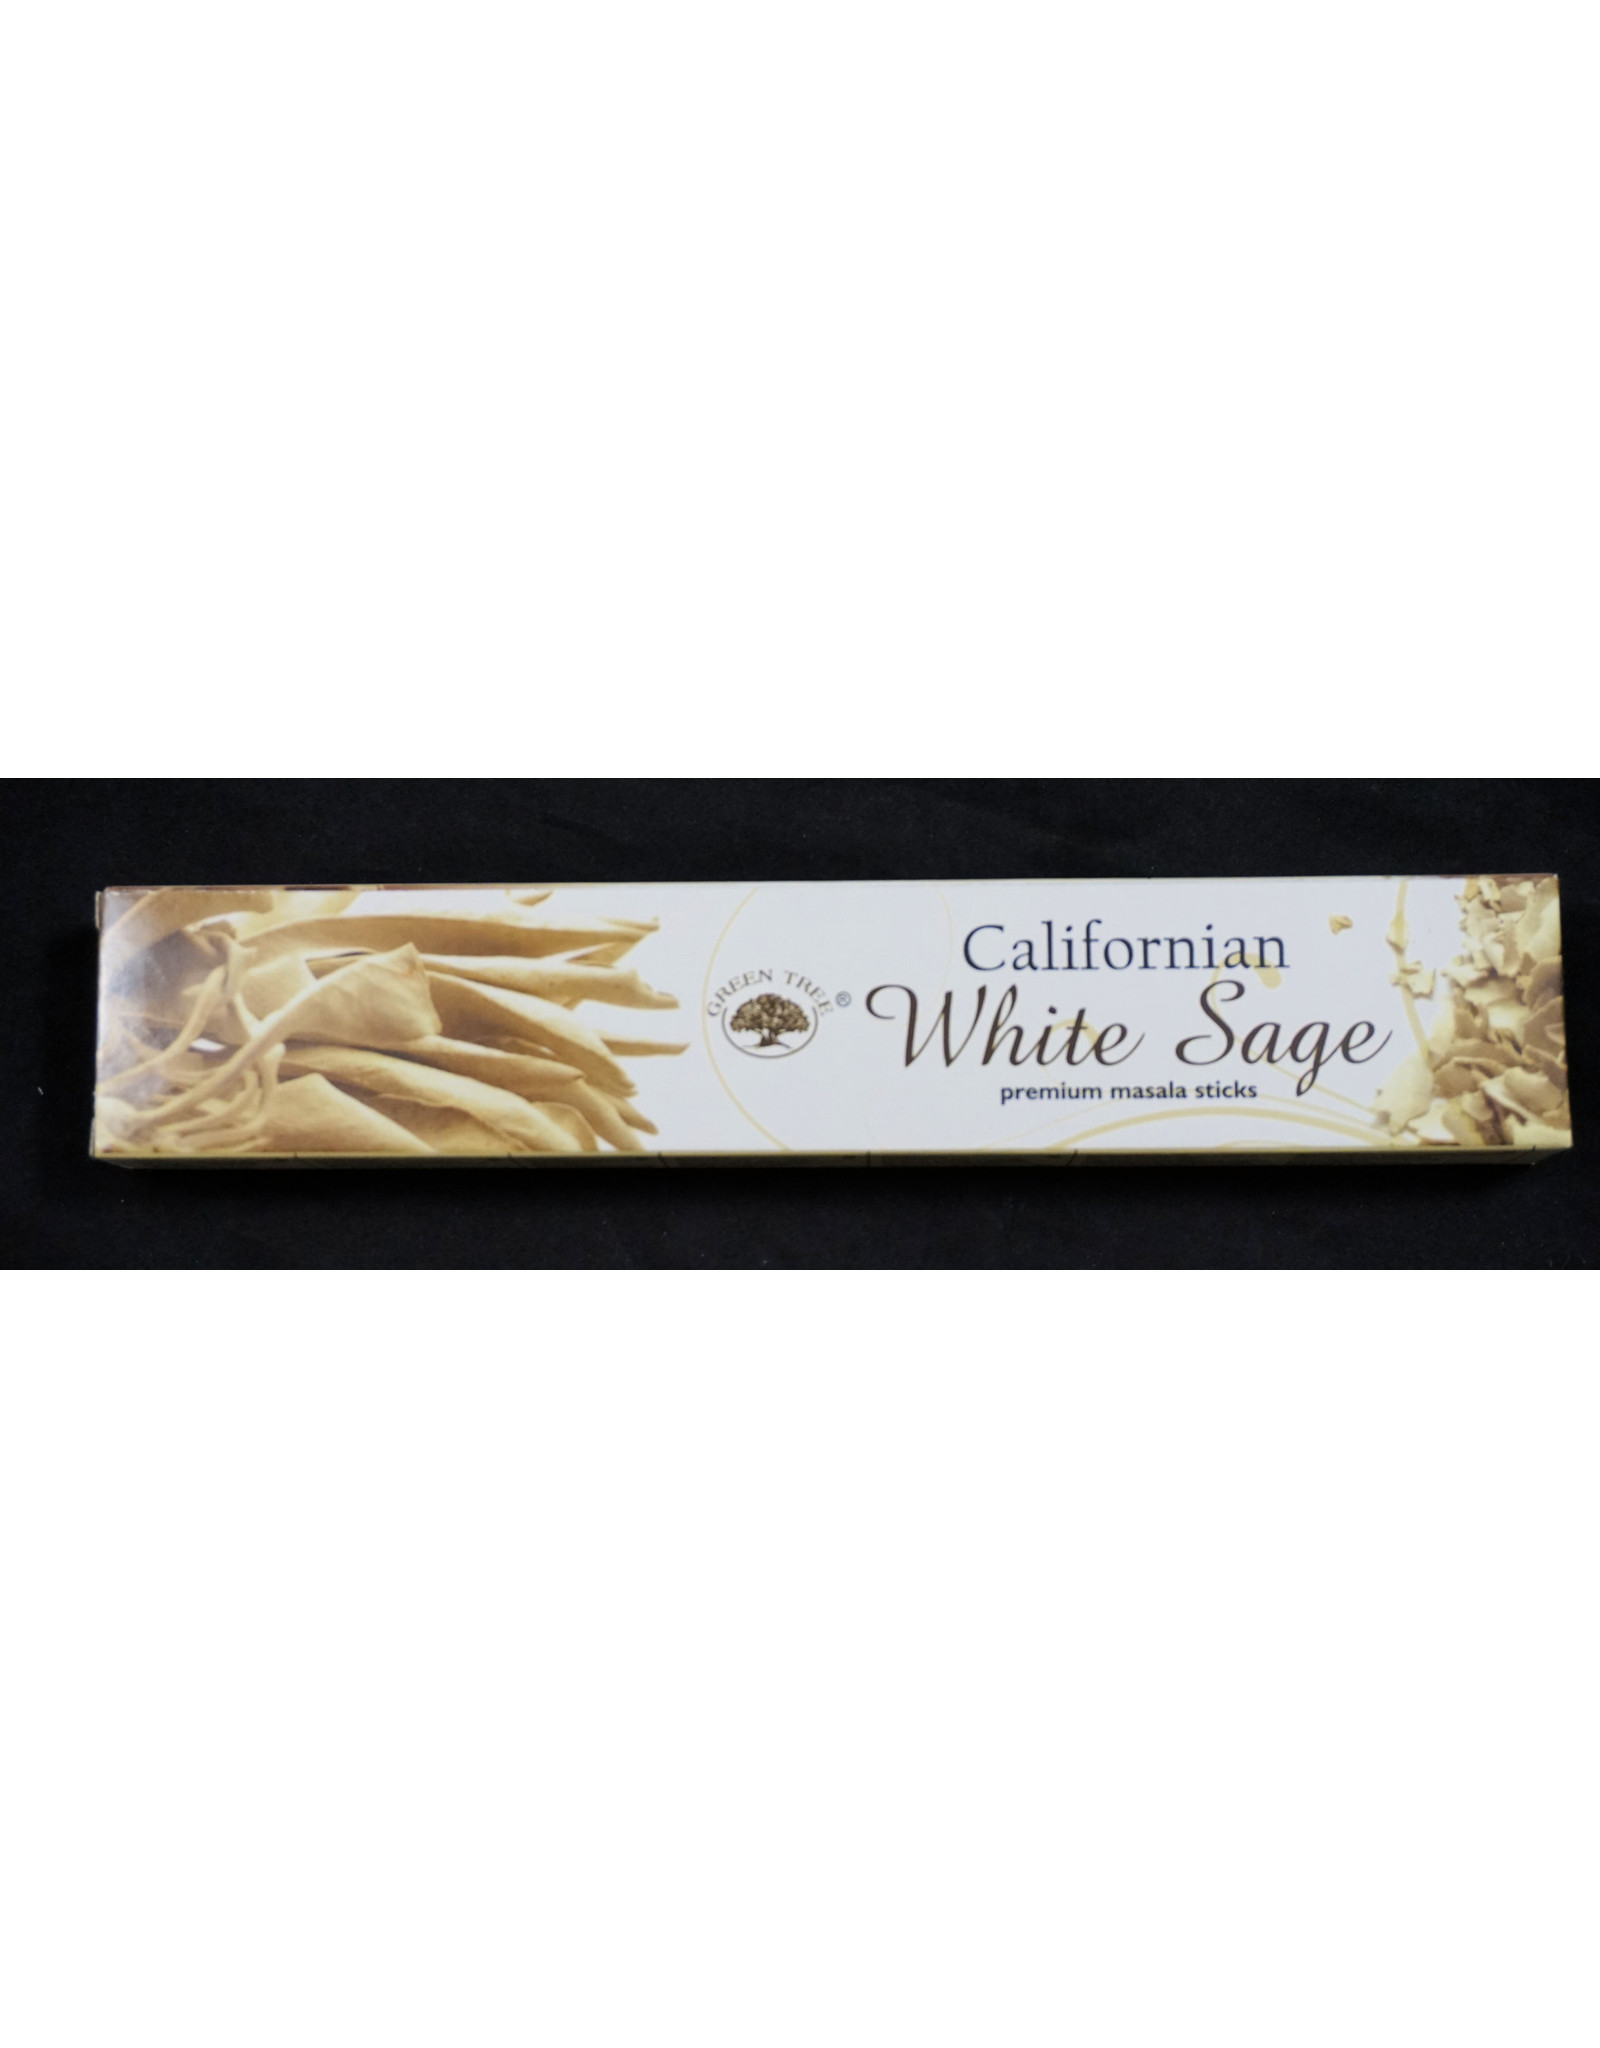 Green Tree Incense 15g - White Sage